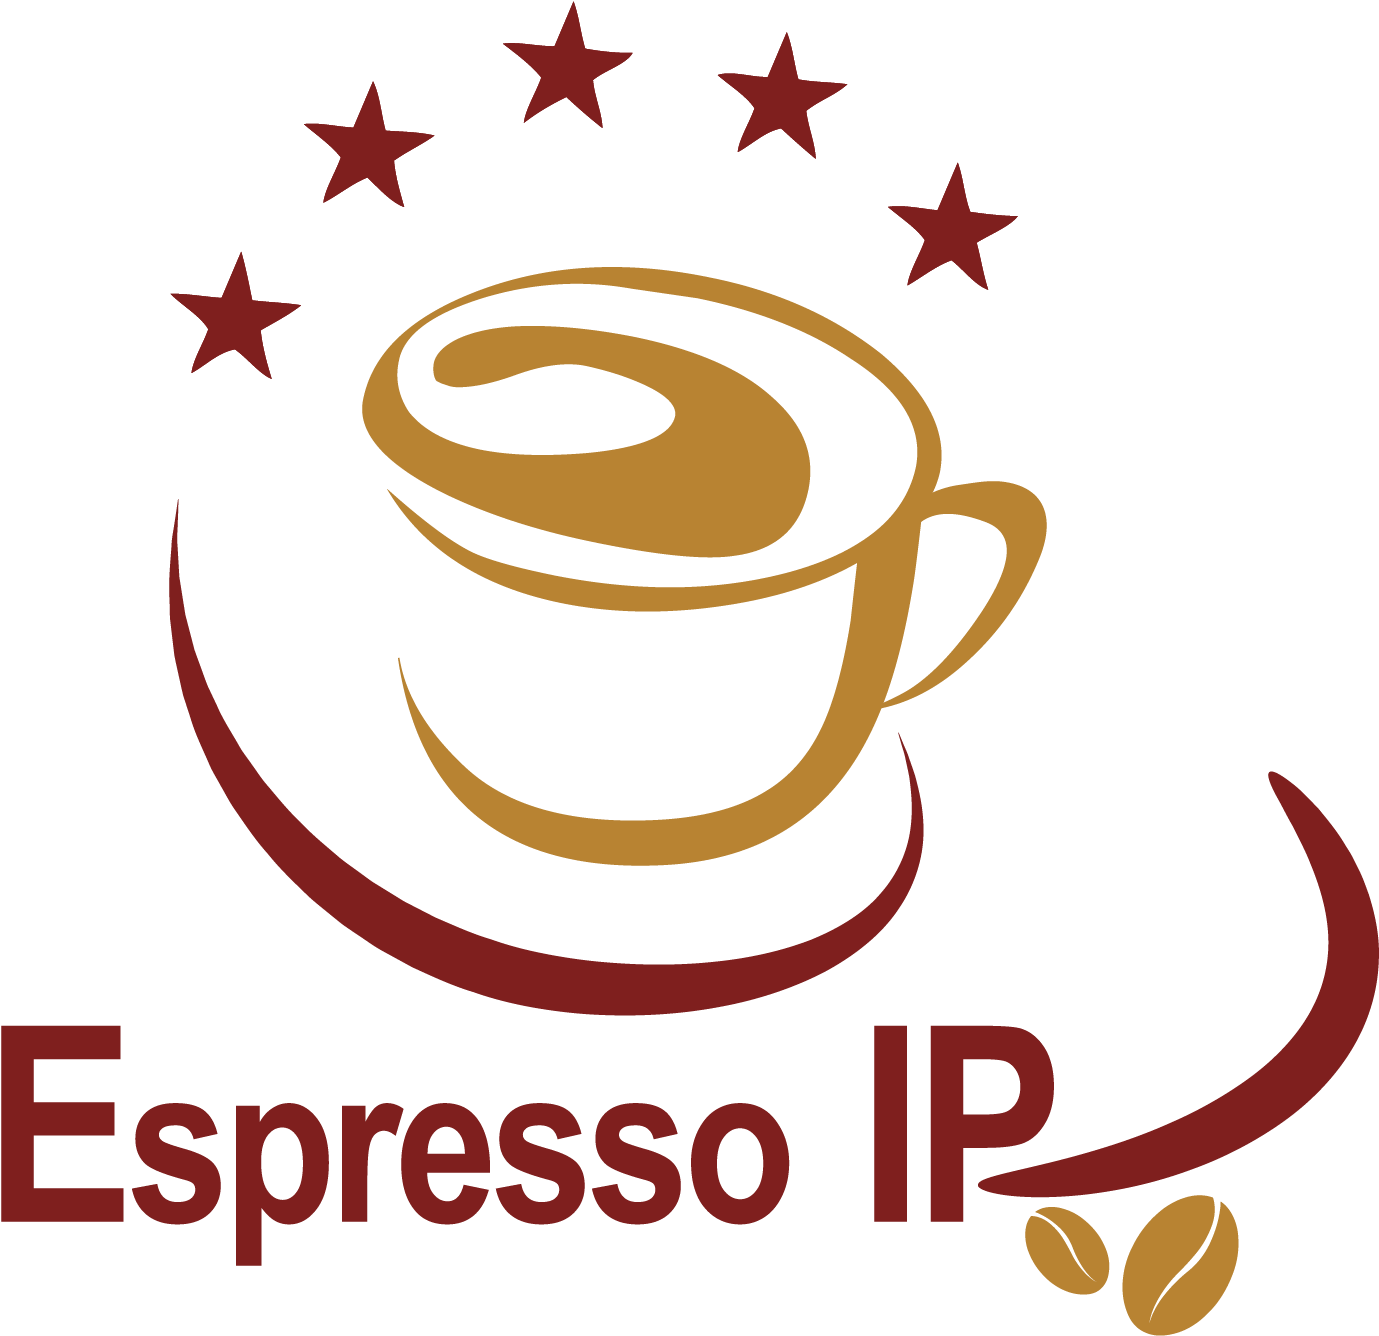 Espressoip-01 - Brazil (1418x1418)